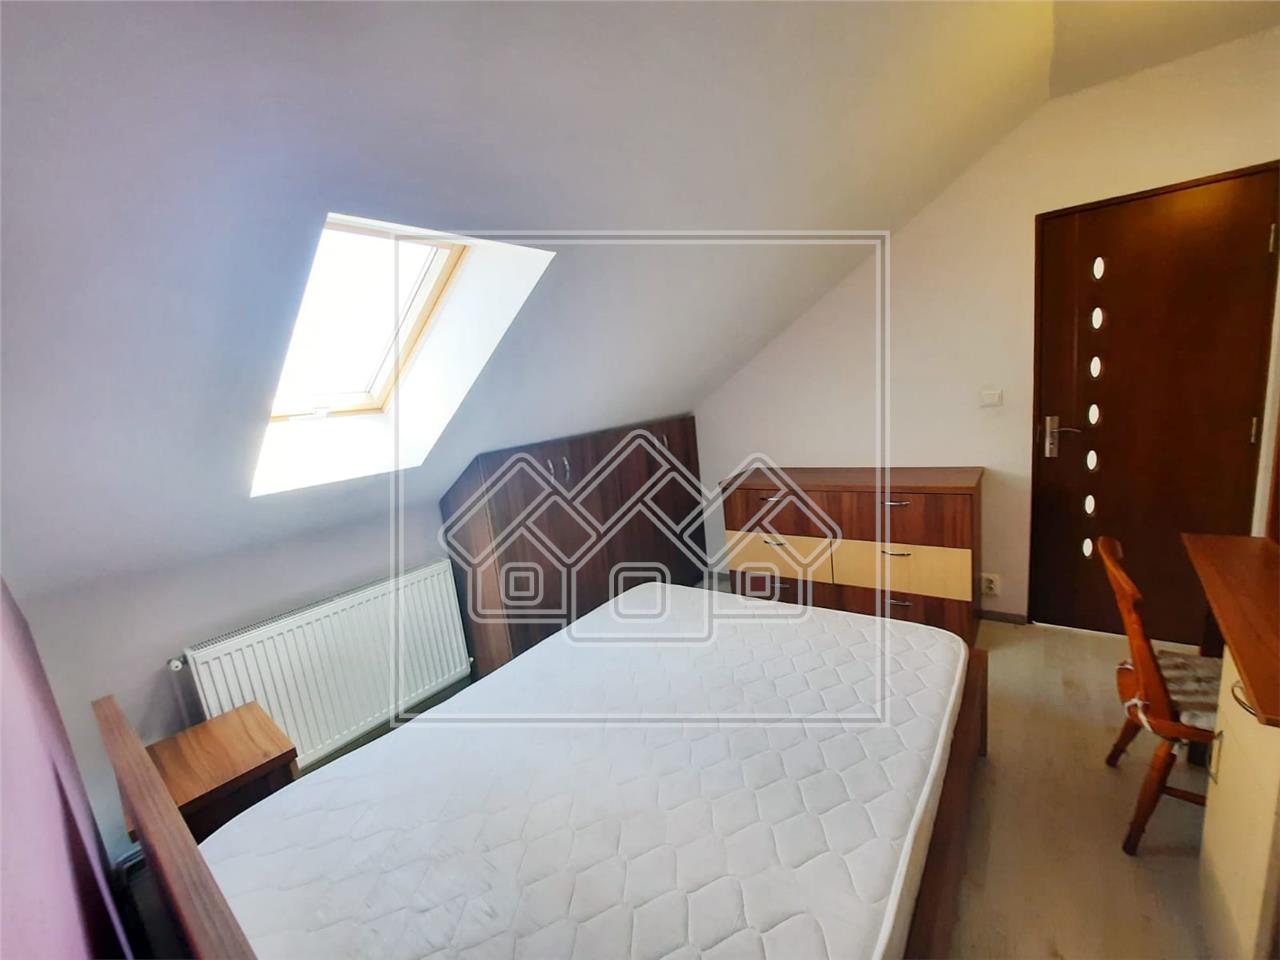 Dachboden zum Verkauf in Sibiu - 3 Zimmer - 2 B?der - Strand II Bereic